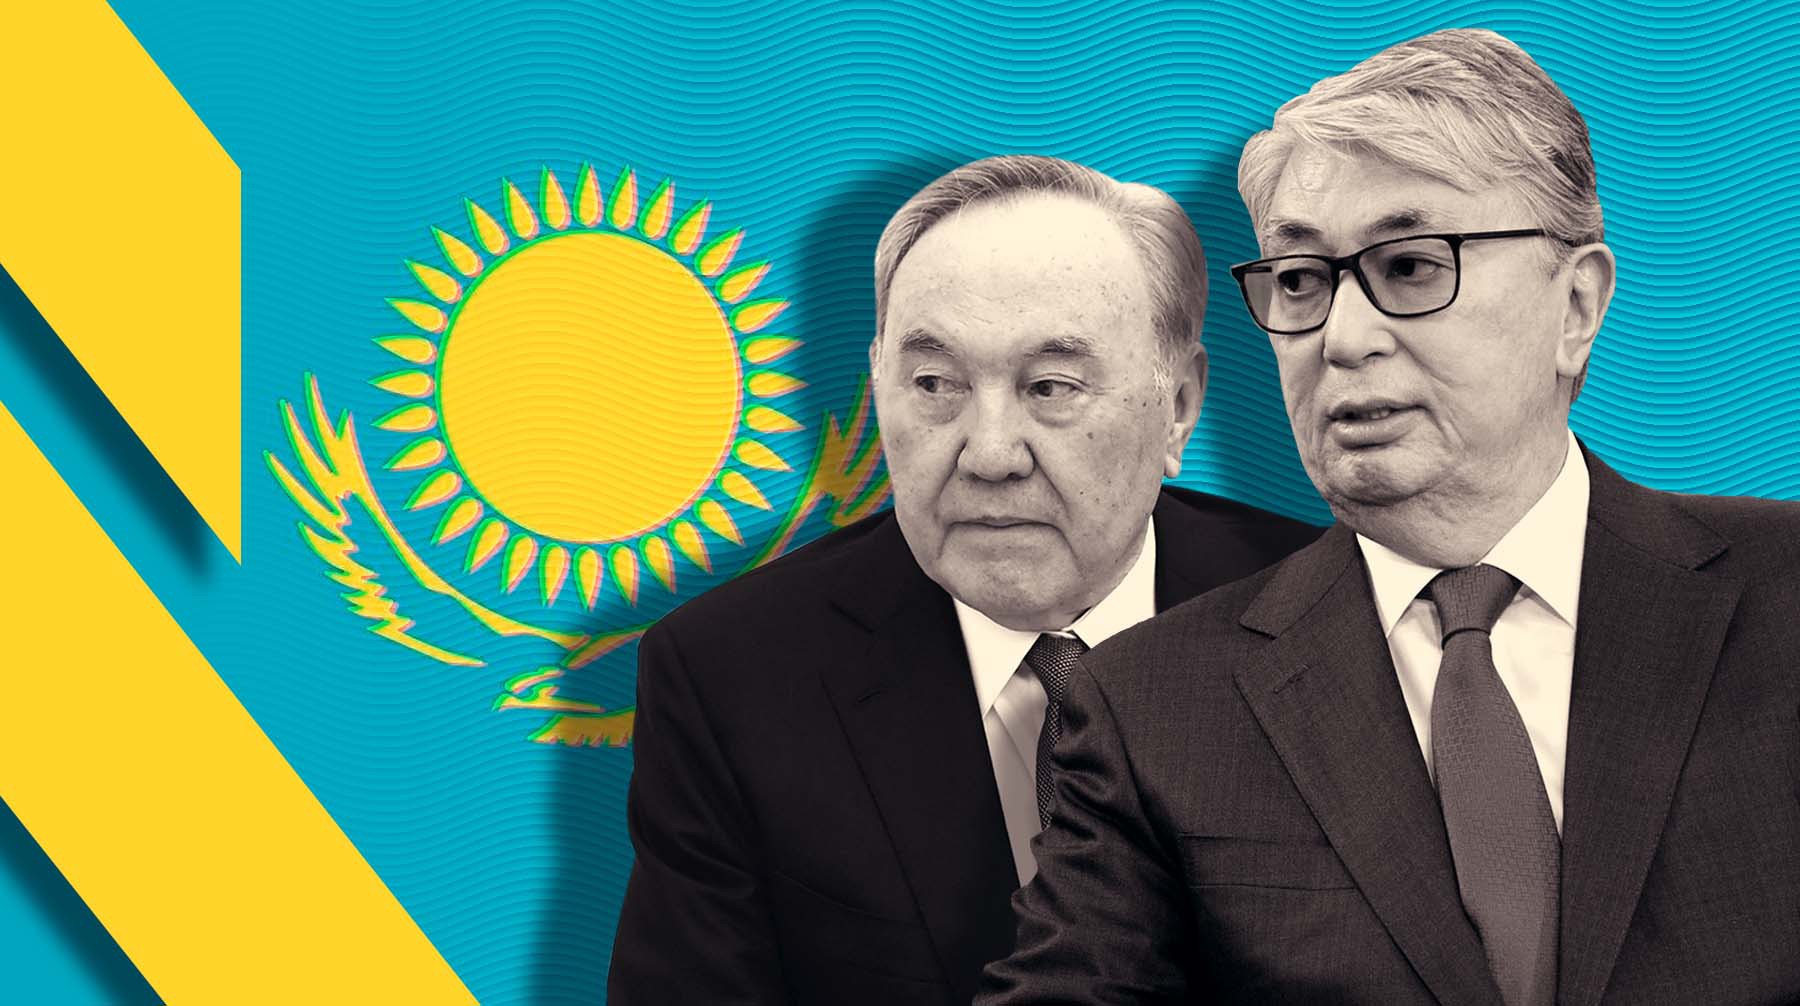 Dailystorm - Что изменится в Казахстане? Токаев объявил реформы и покритиковал Назарбаева